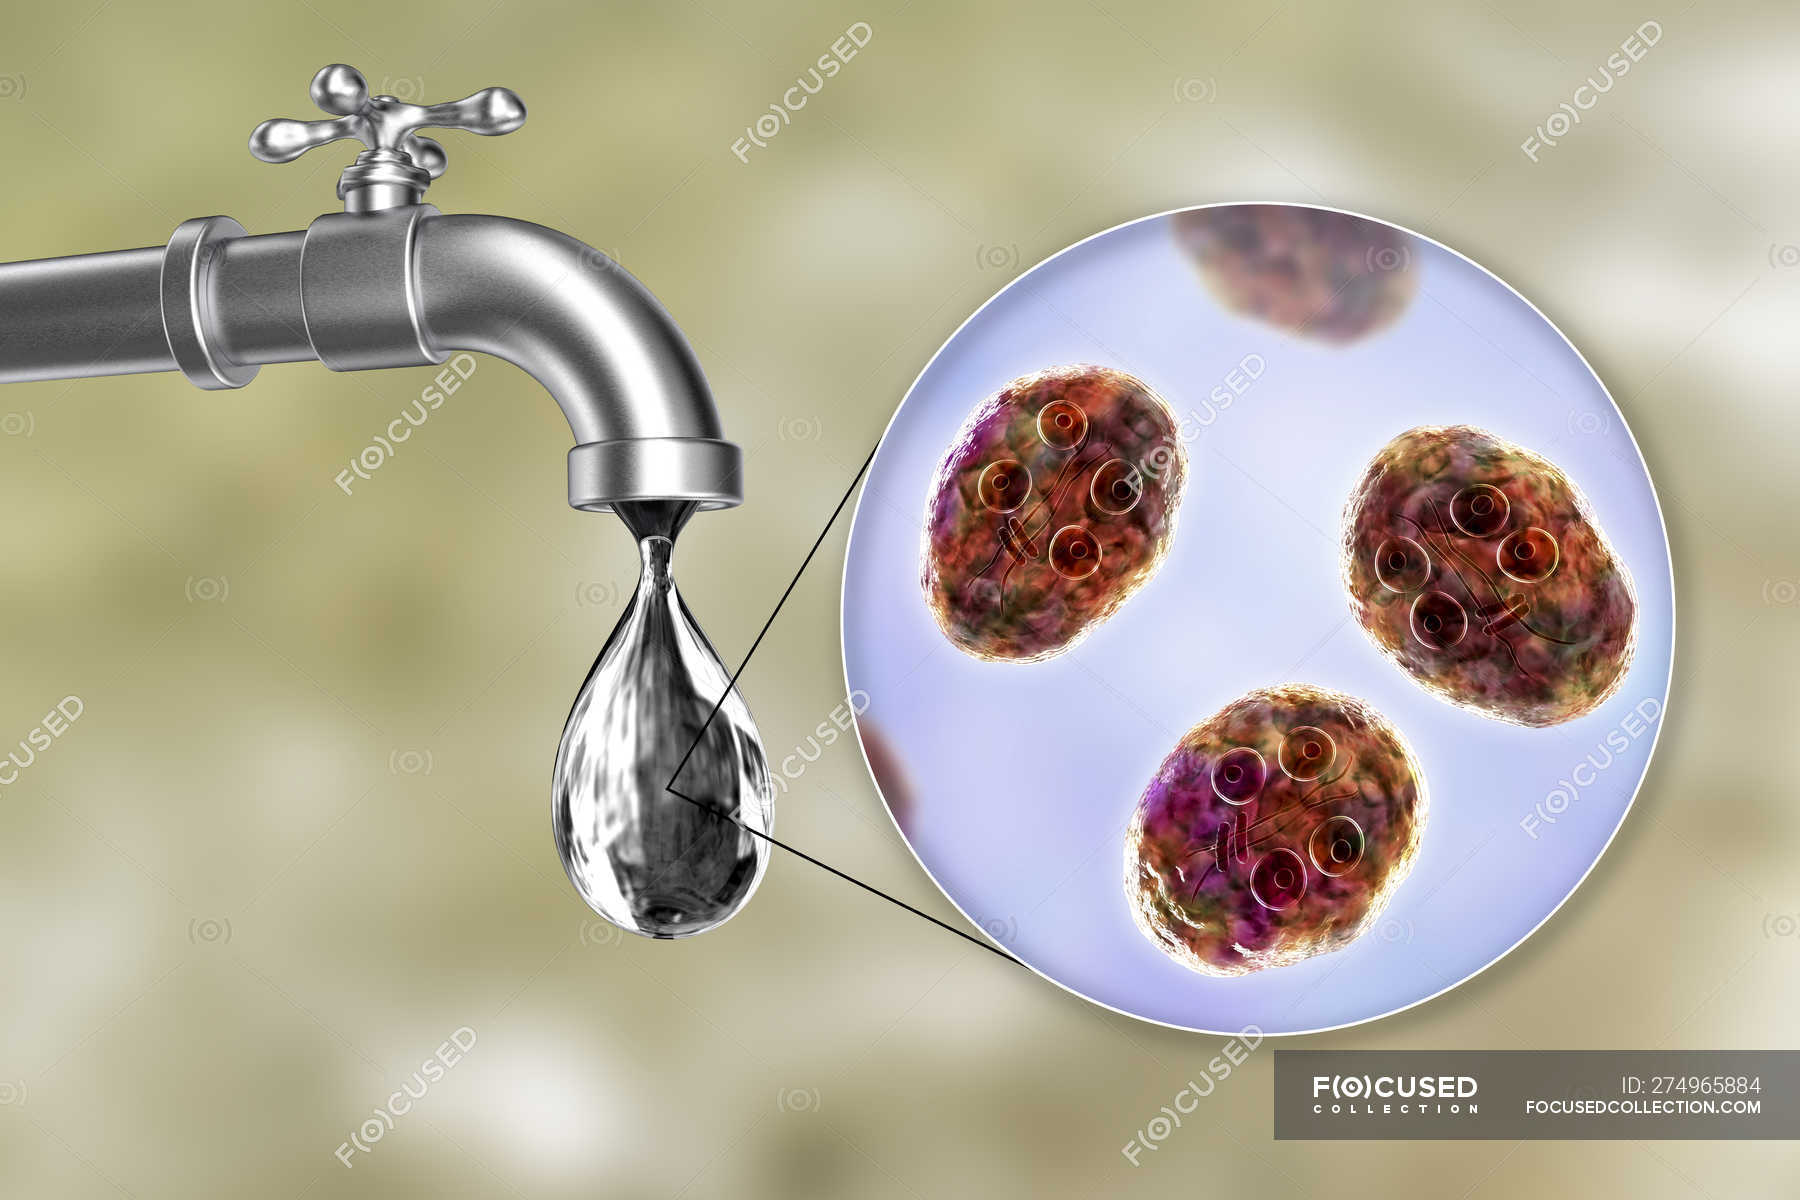 giardia in tap water